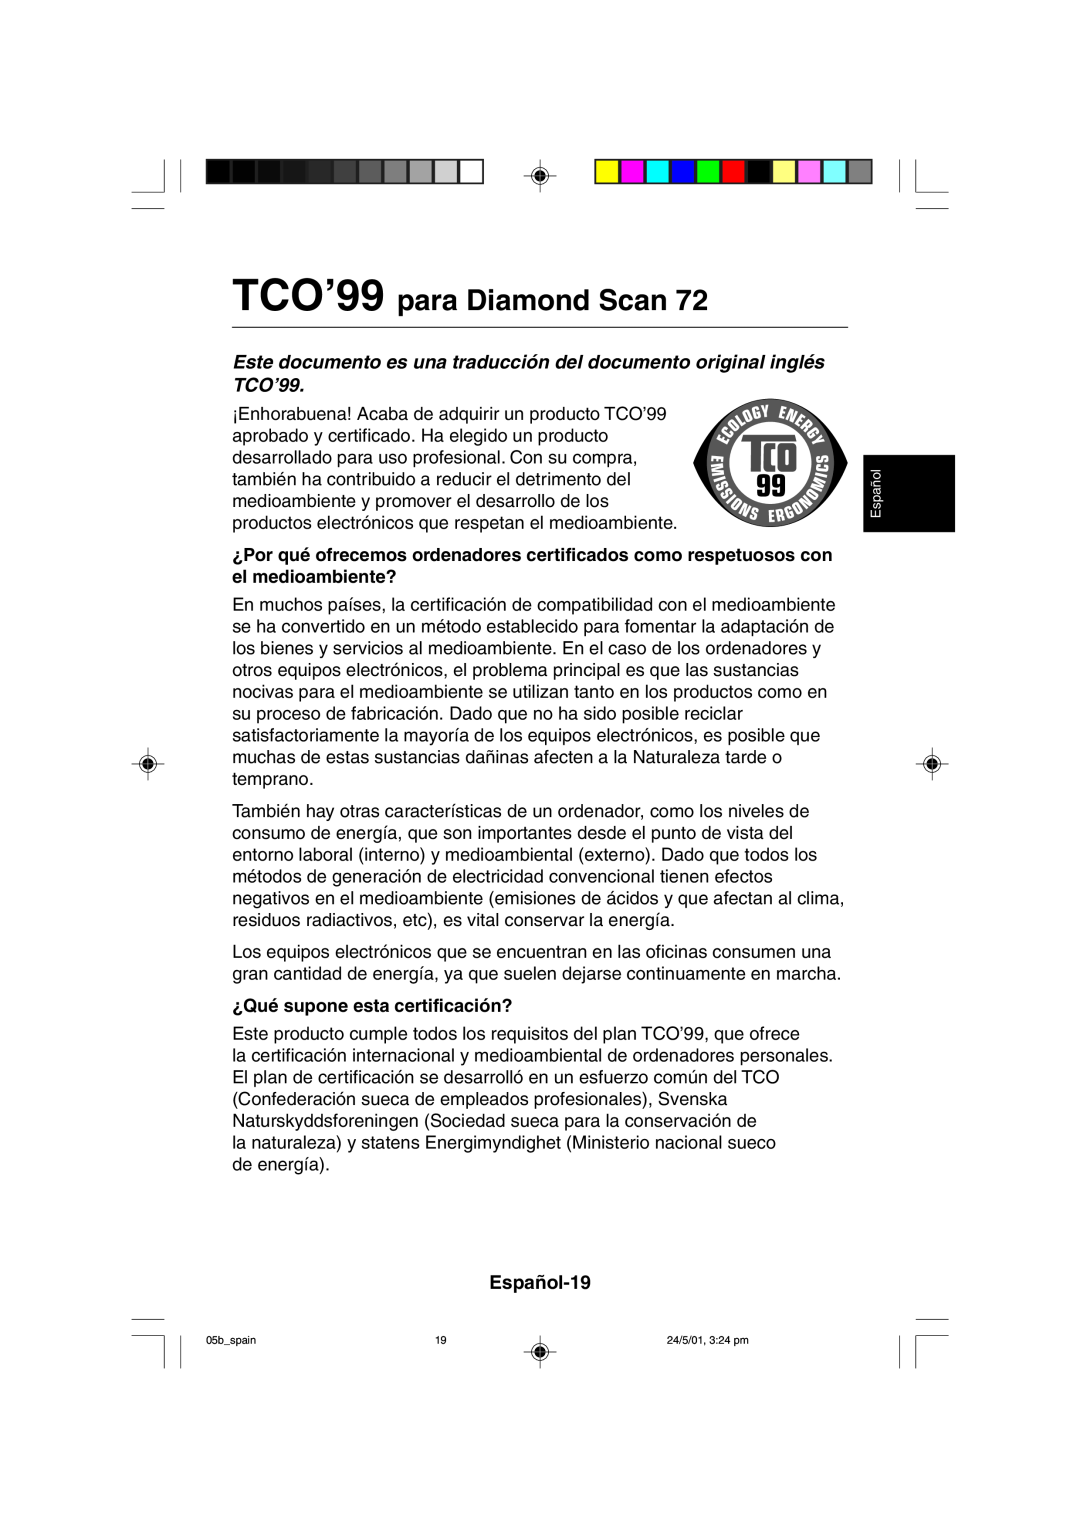 Mitsubishi Electronics M557 user manual TCO’99 para Diamond Scan, Español-19, ¿Qué supone esta certificación? 